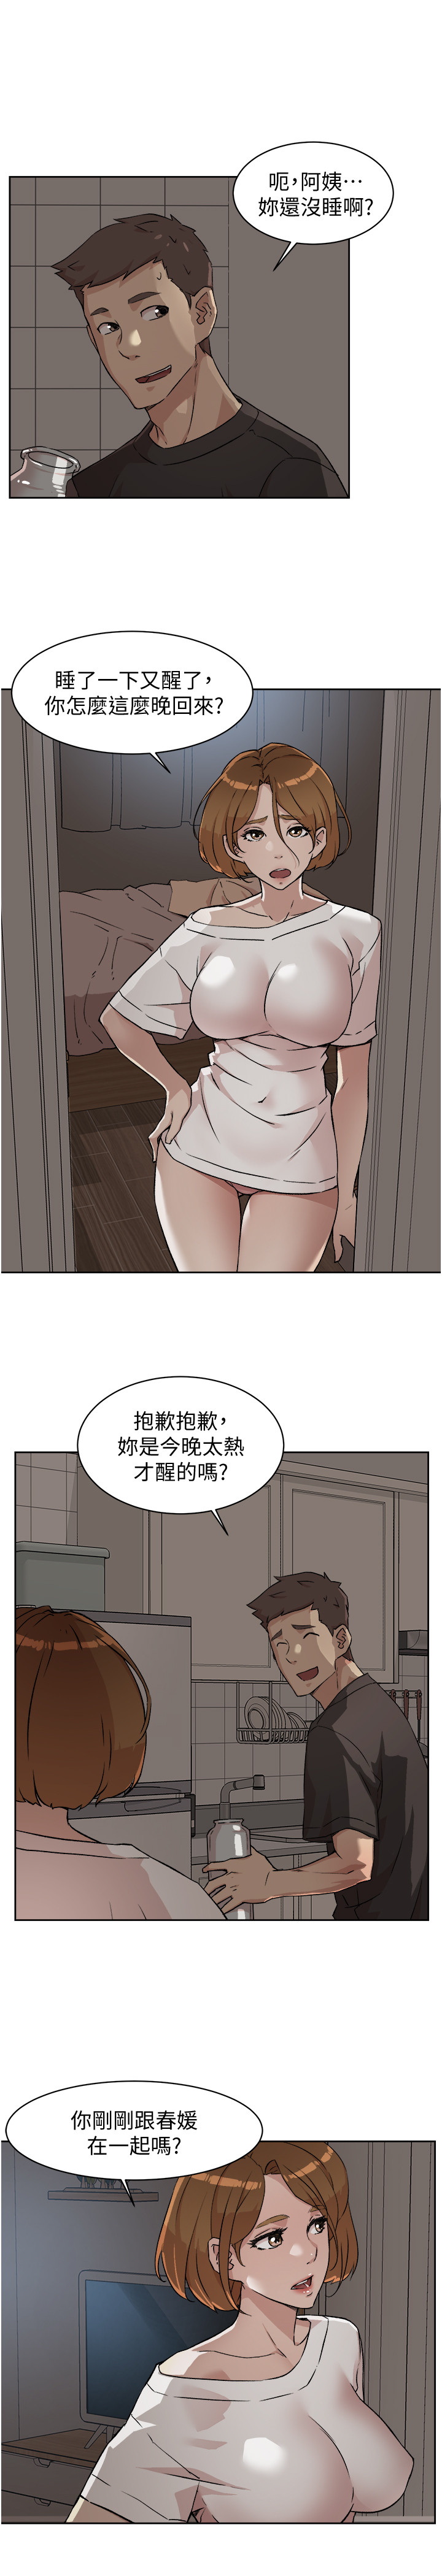 韩国污漫画 好友的私生活 第6话 29